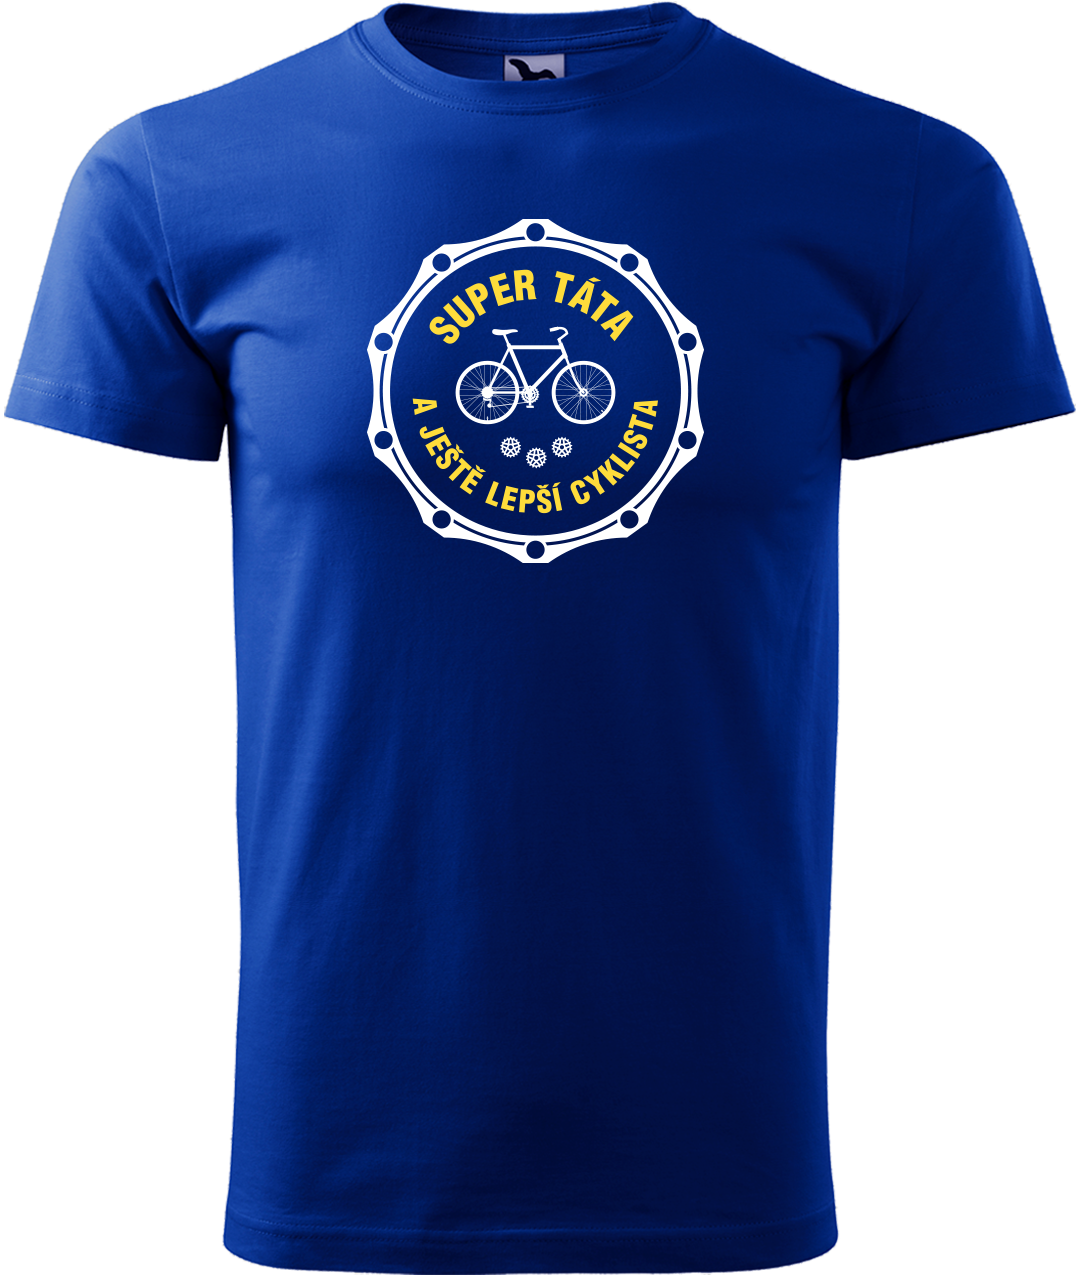 Pánské tričko pro cyklistu - Super táta a ještě lepší cyklista Velikost: XL, Barva: Královská modrá (05)